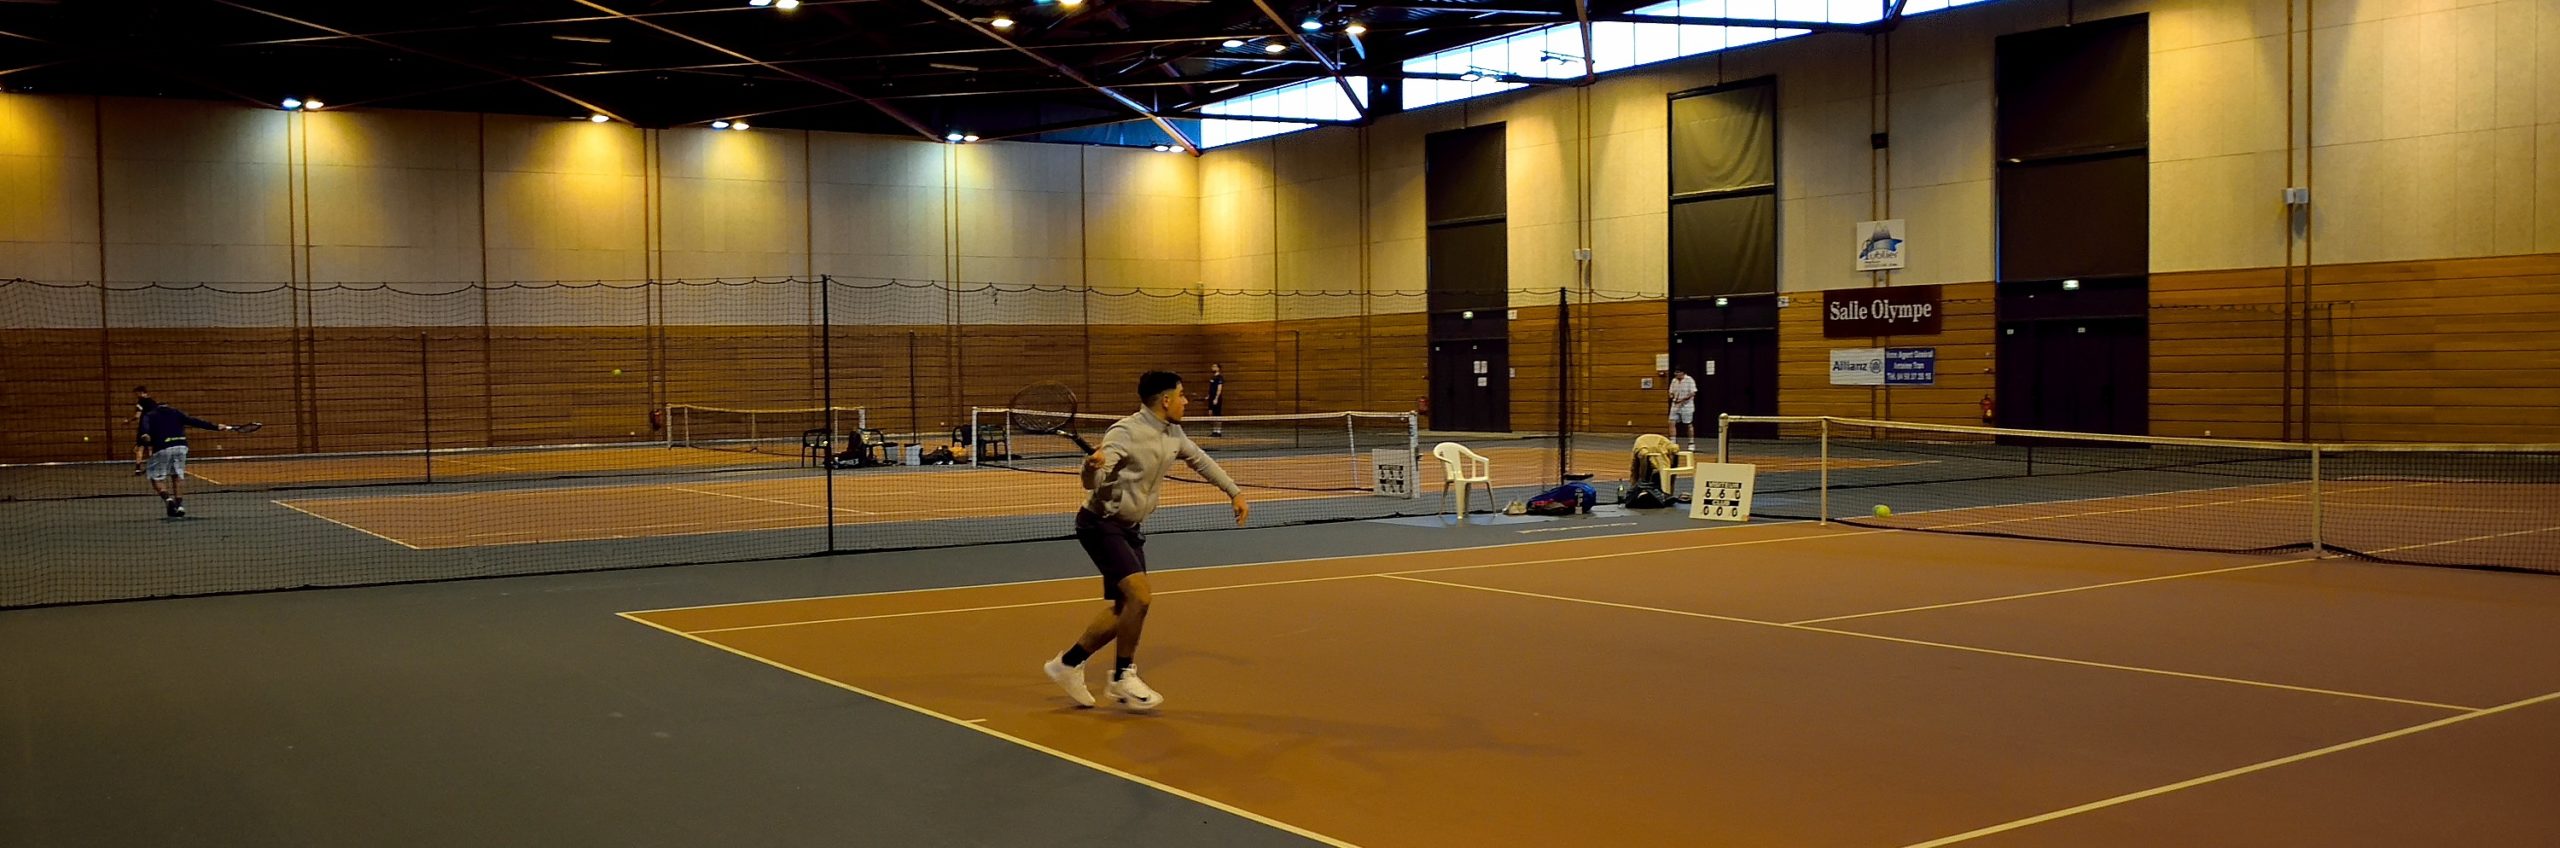 Tournoi Indoor - Tennis Publier Amphion @ Salle Olympe